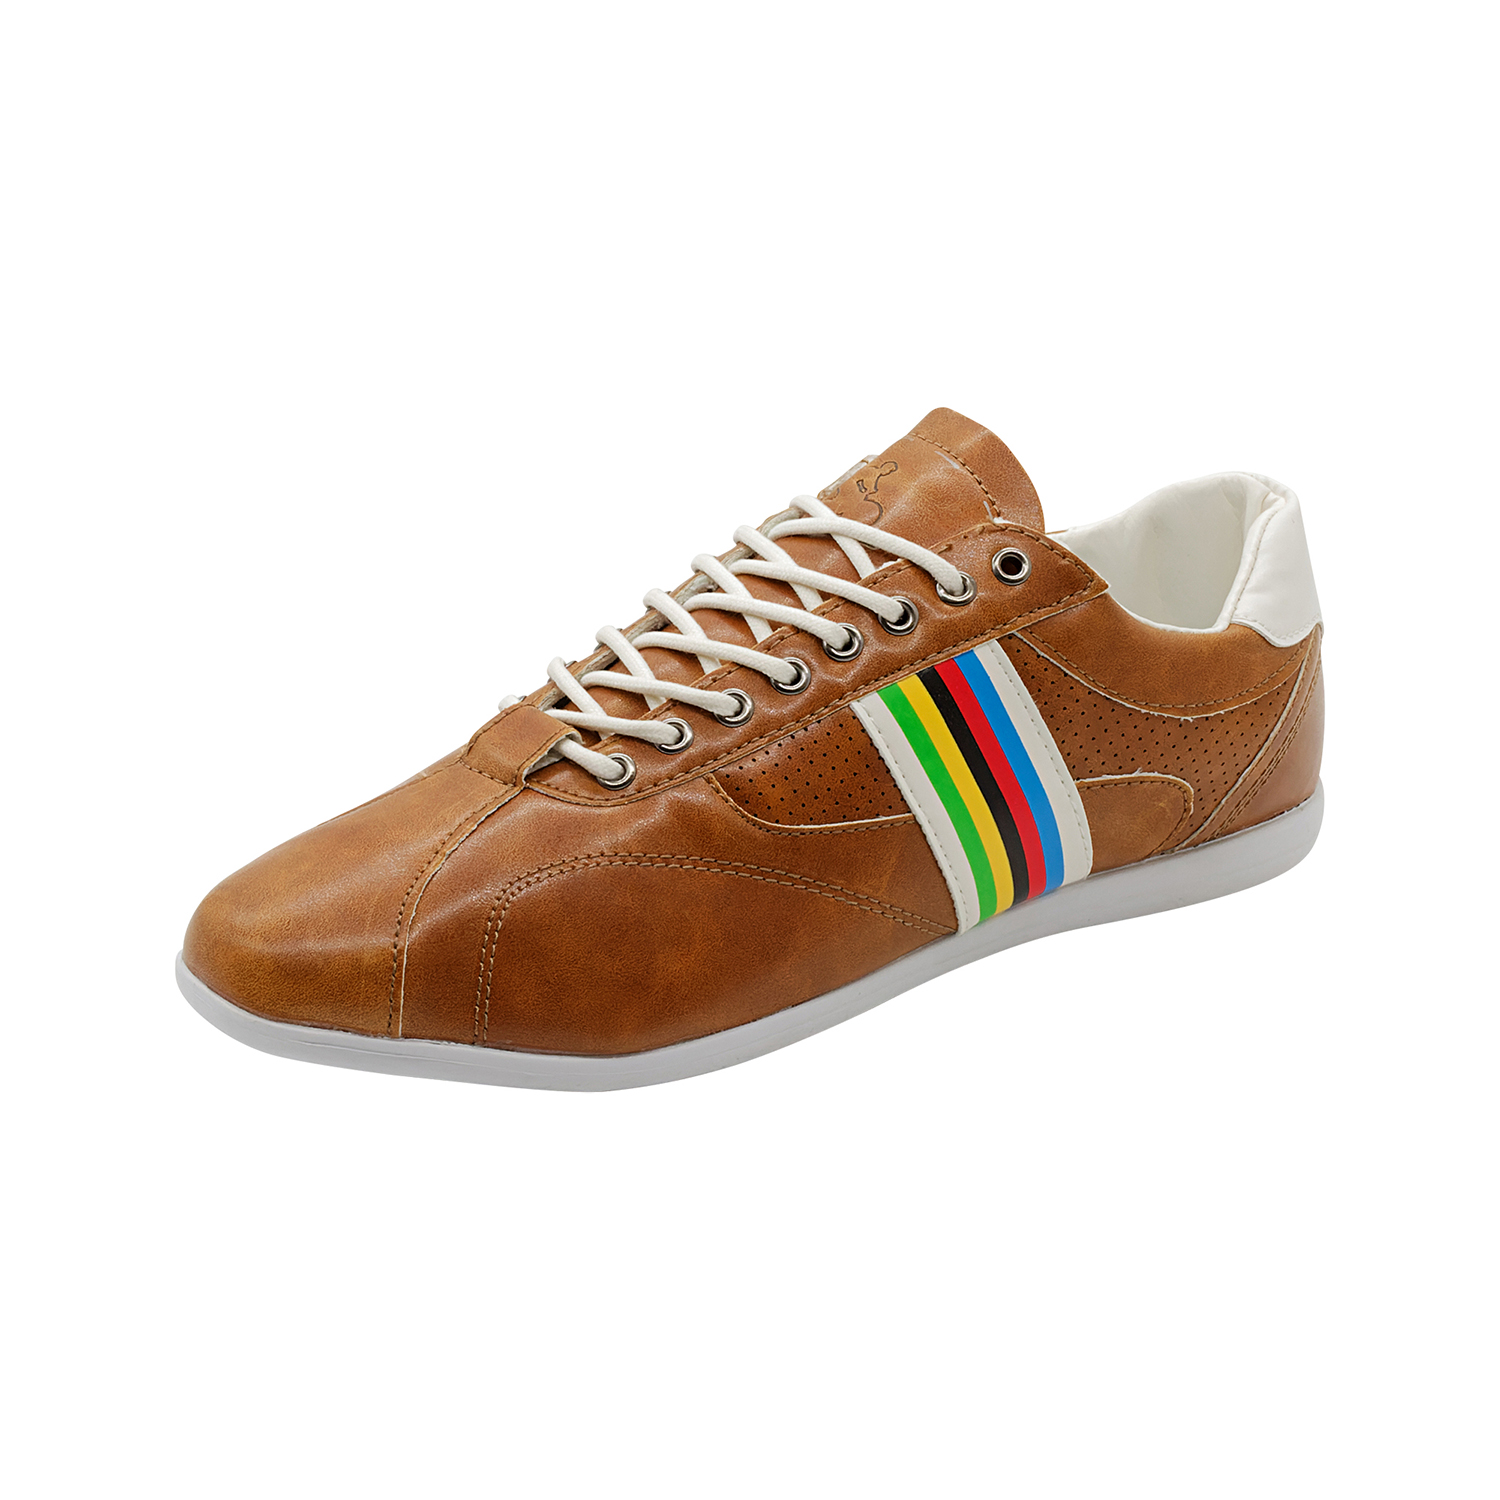 Freizeit-Schuh Vintage Gr. 42 in Braun/Weiß/Multicolor